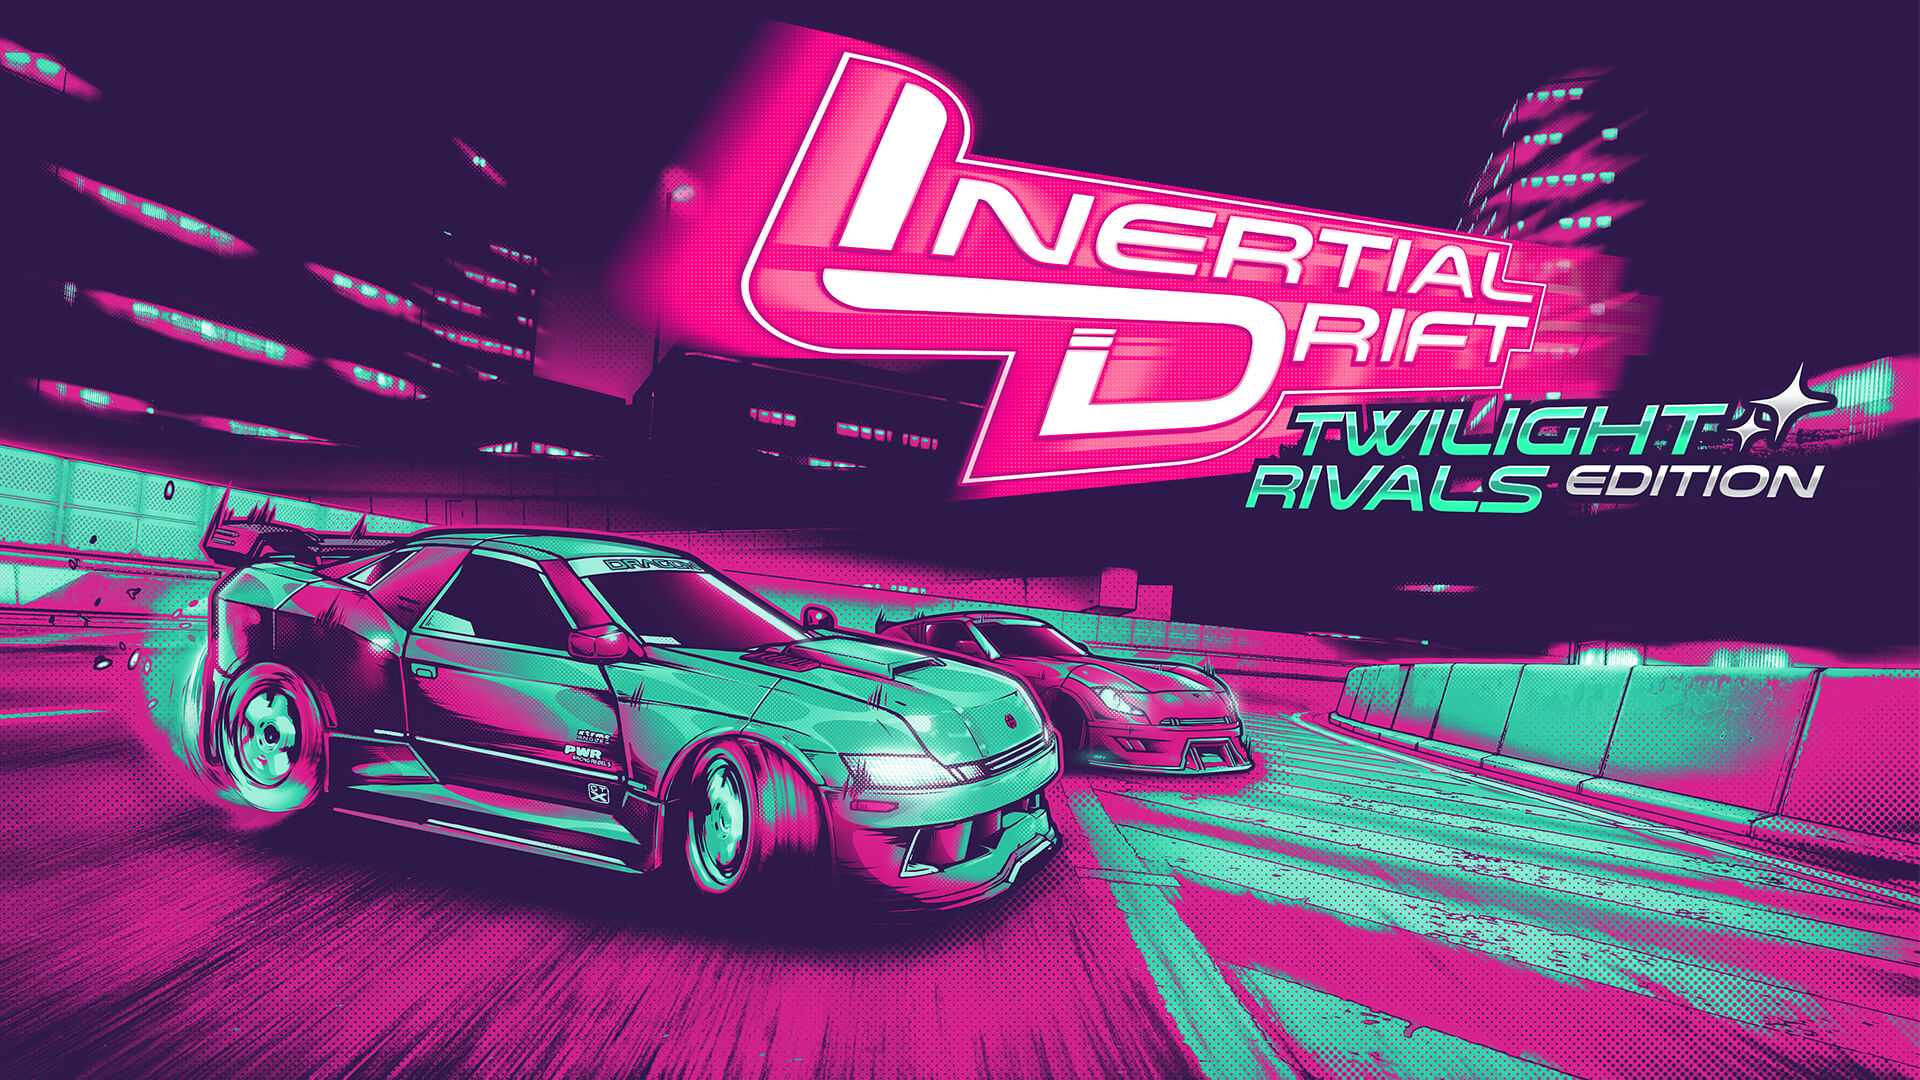 Inertial Drift Twilight Rivals Edition brengt de driftracer naar de huidige generatie consoles